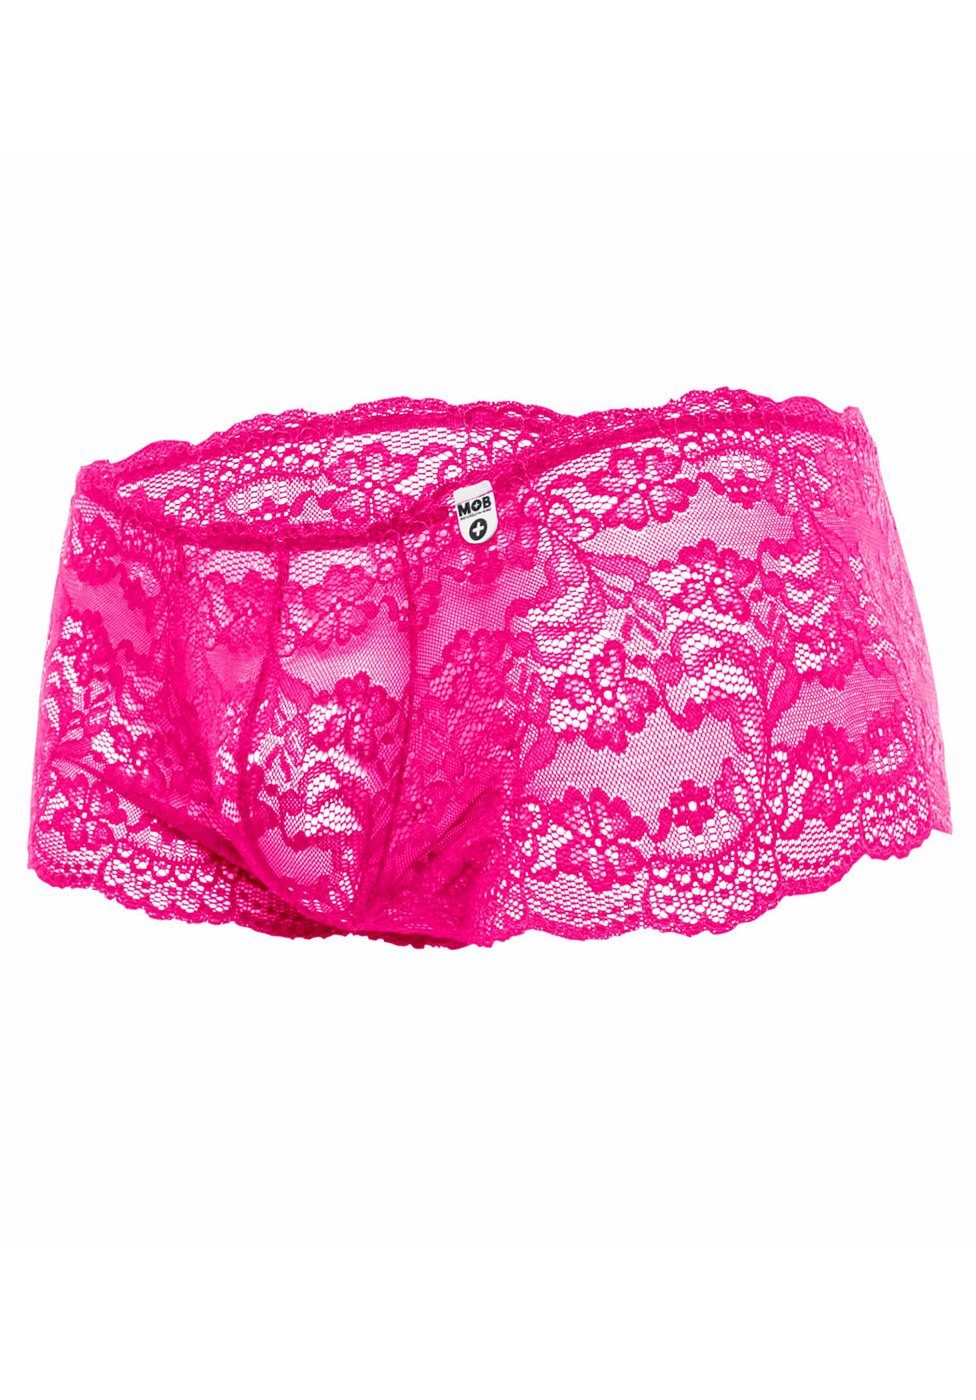 MOB Eroticwear Boxershorts Boxershorts pink aus - Spitze